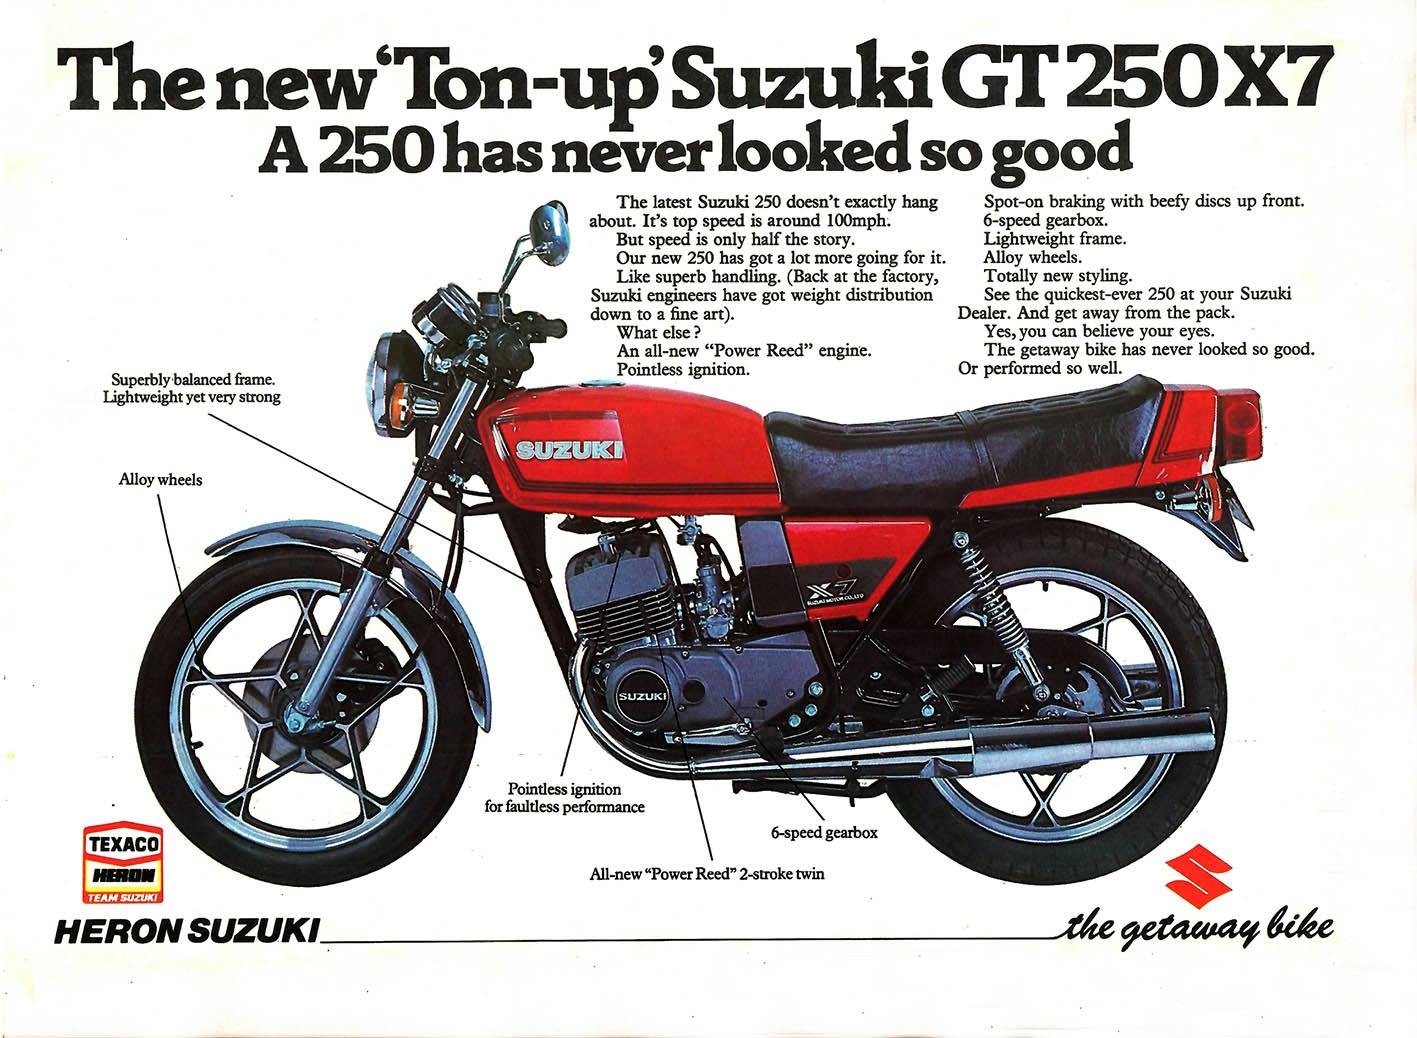 Suzuki GT250 X7 ad